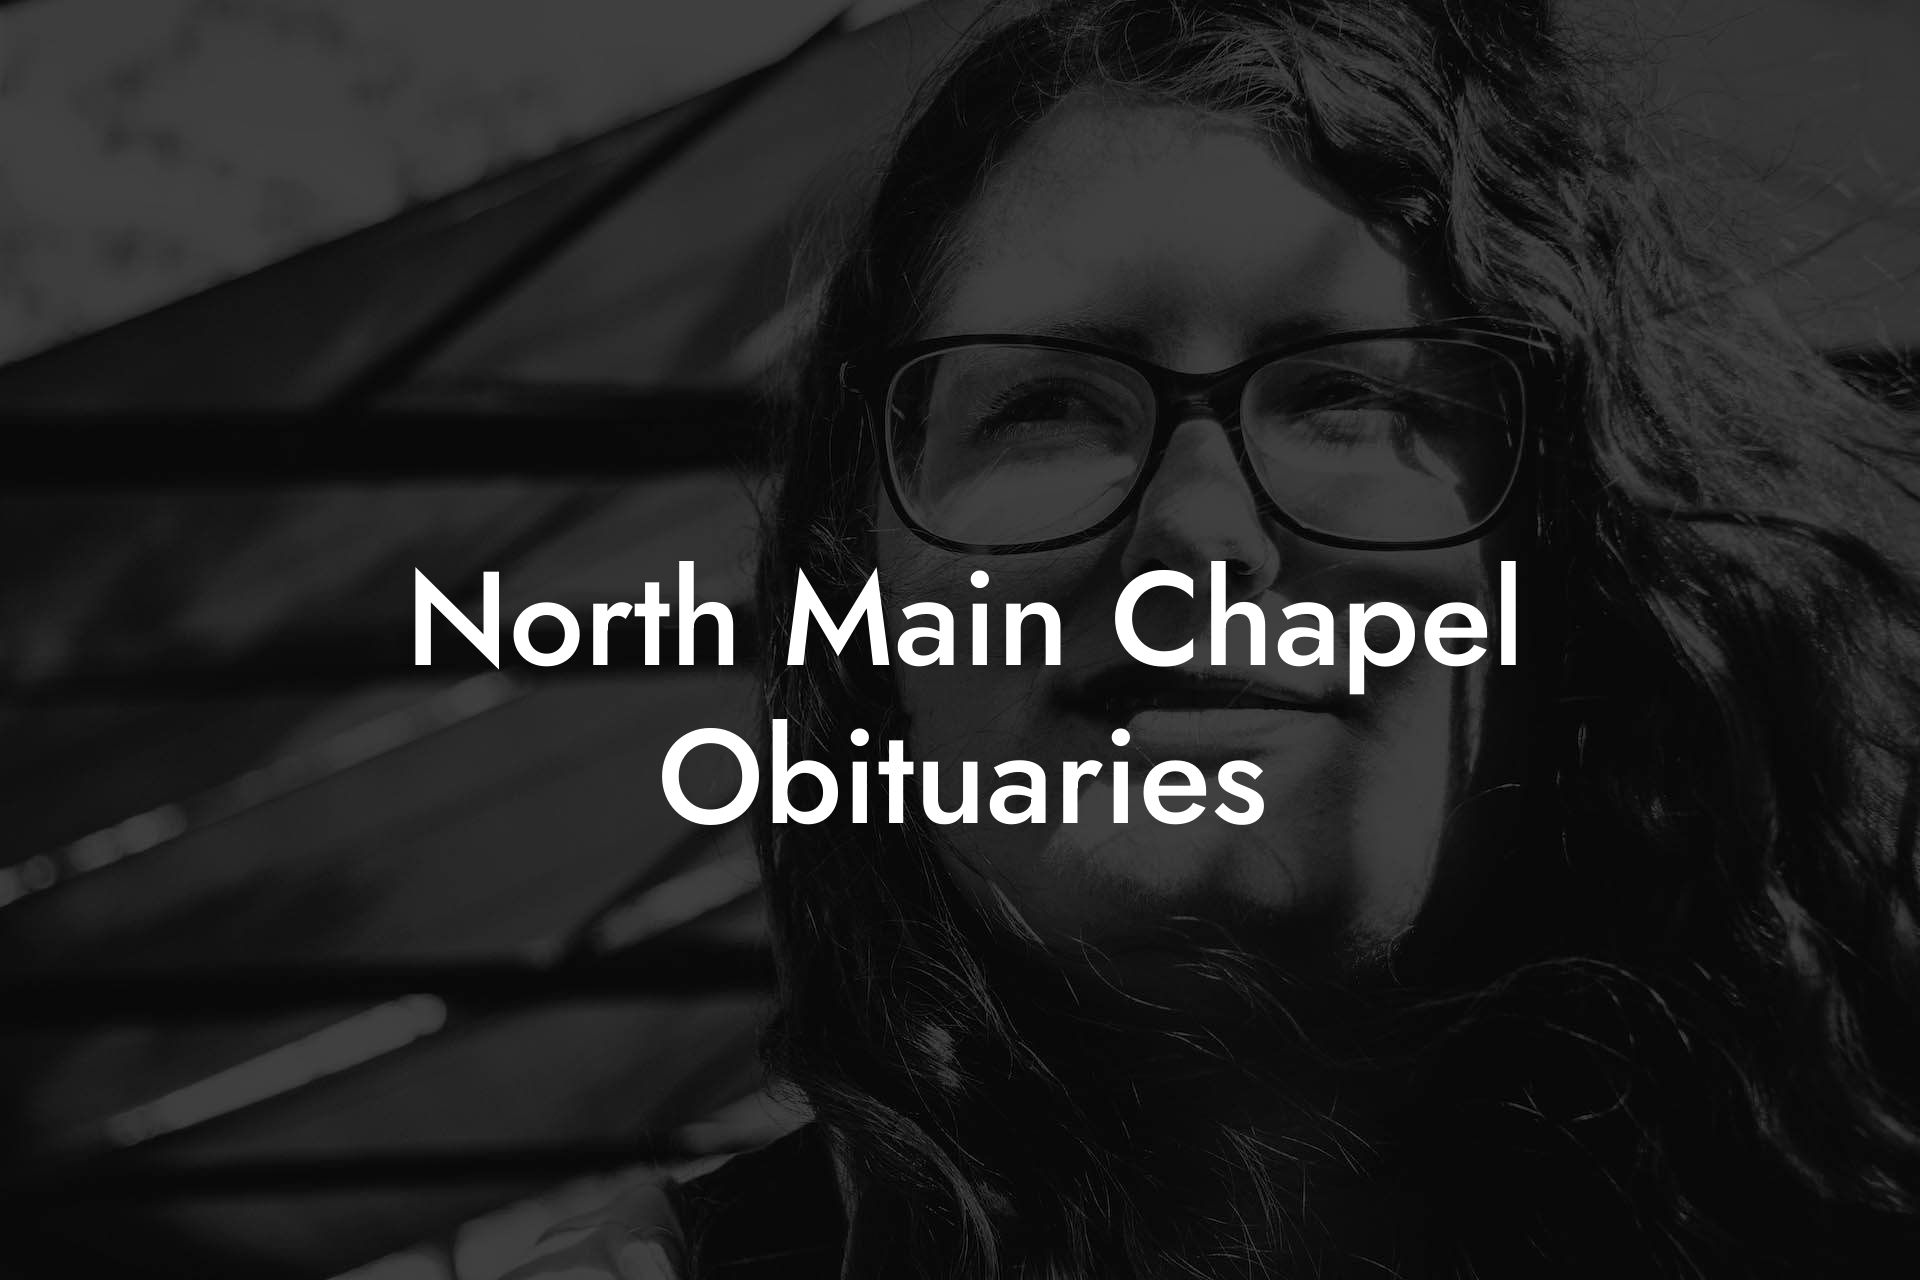 North Main Chapel Obituaries